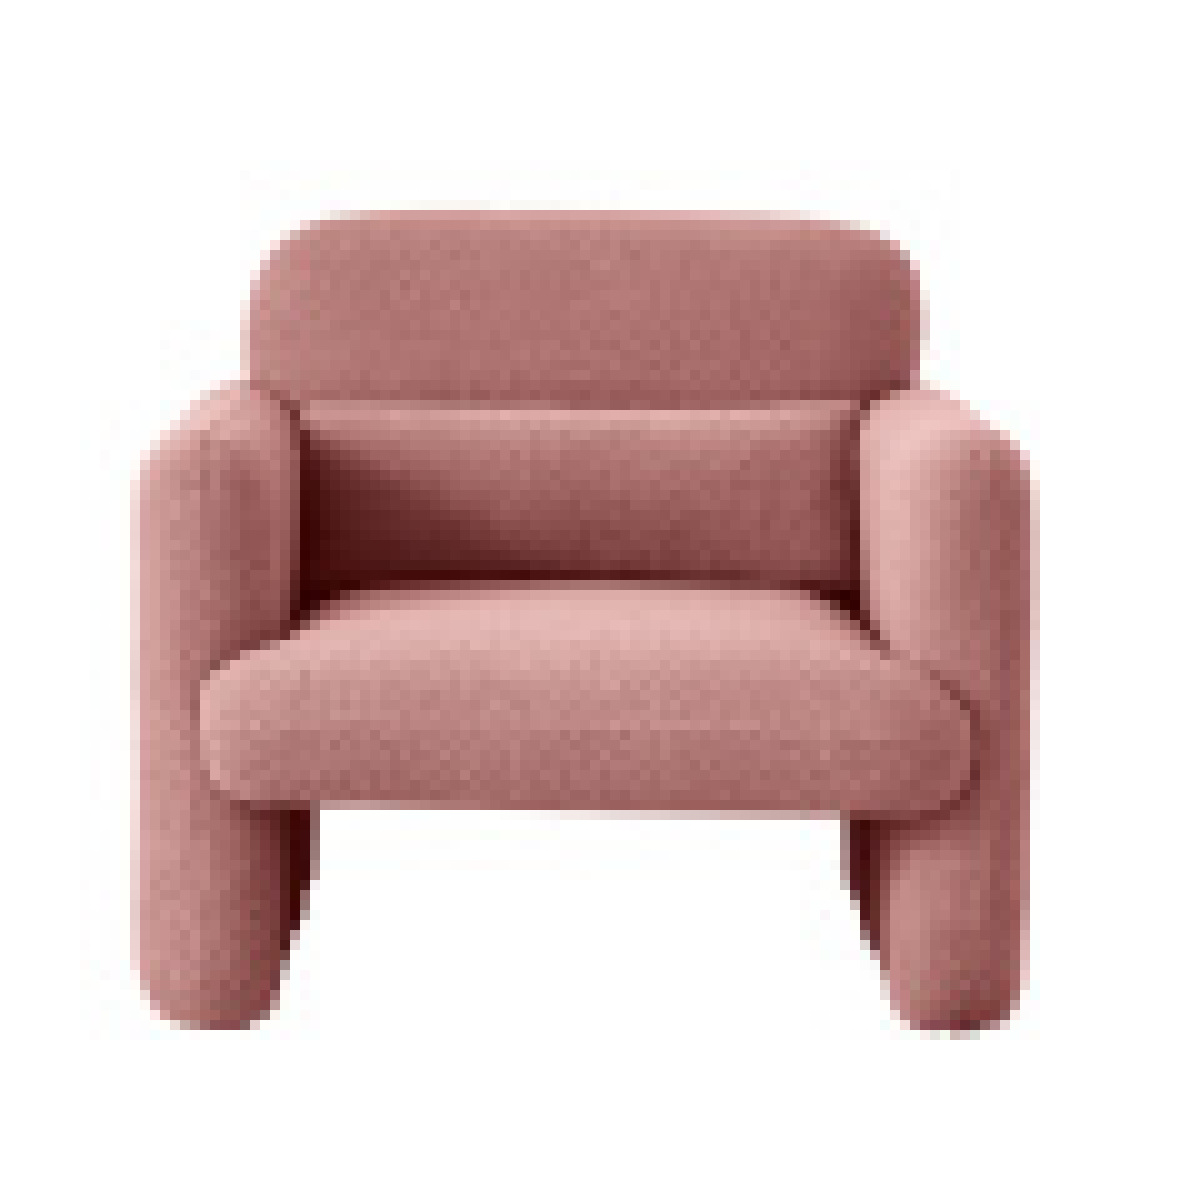 lbf sièges avec 2 sièges dans la table convertible, canapé en cachemire d'agneau (rose)  rose